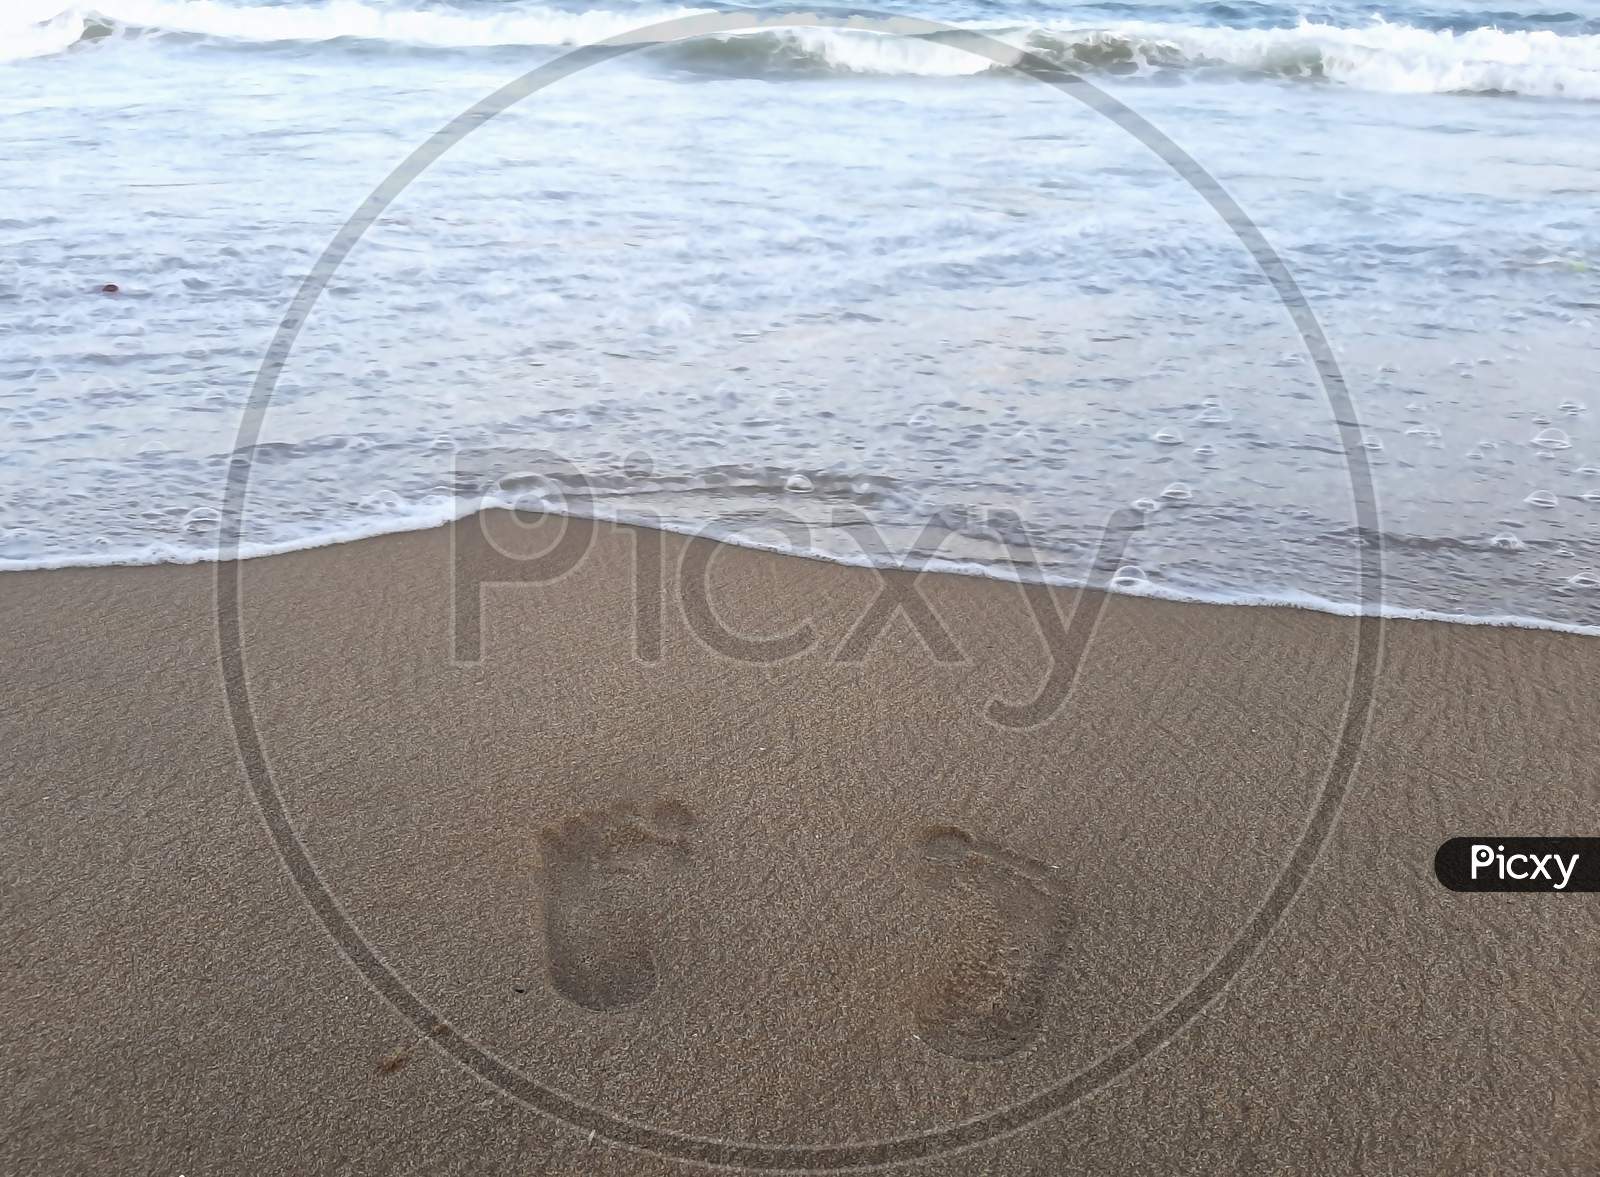 Footprint on the sea beach